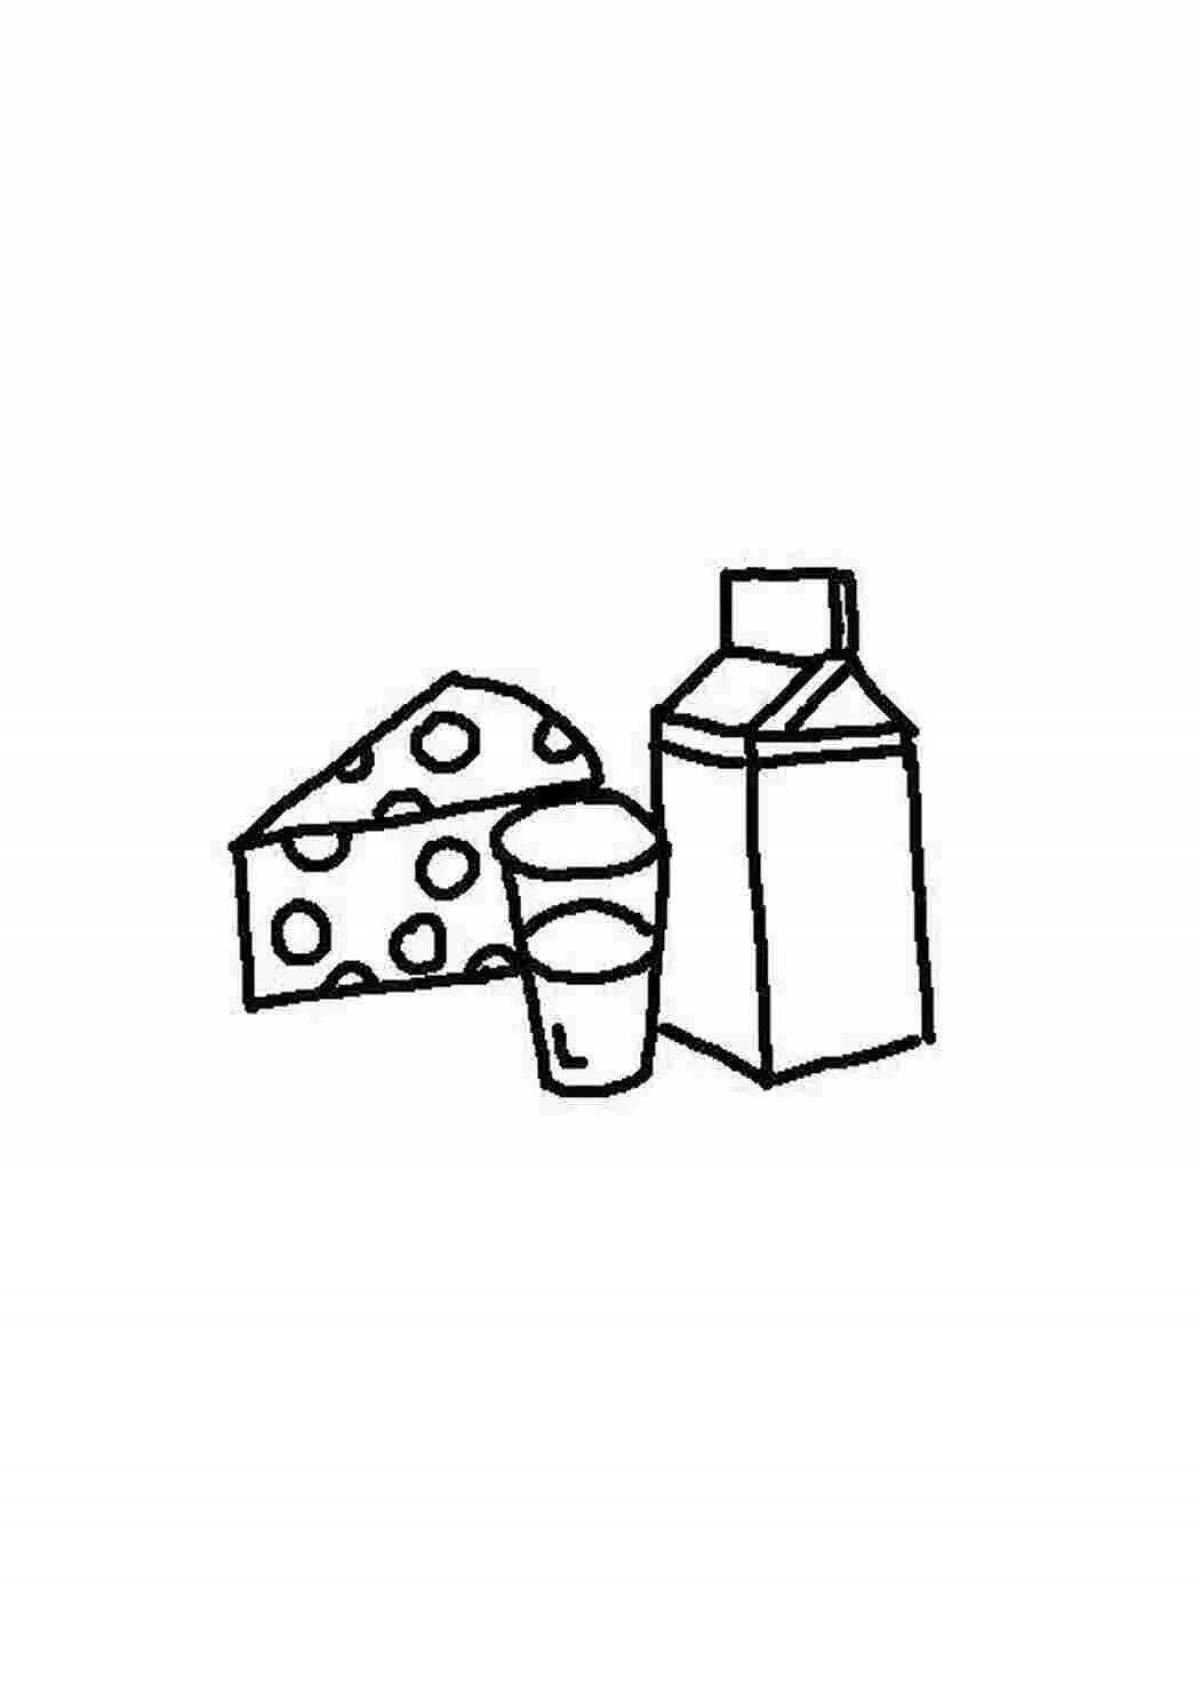 Молочные продукты для детей #6